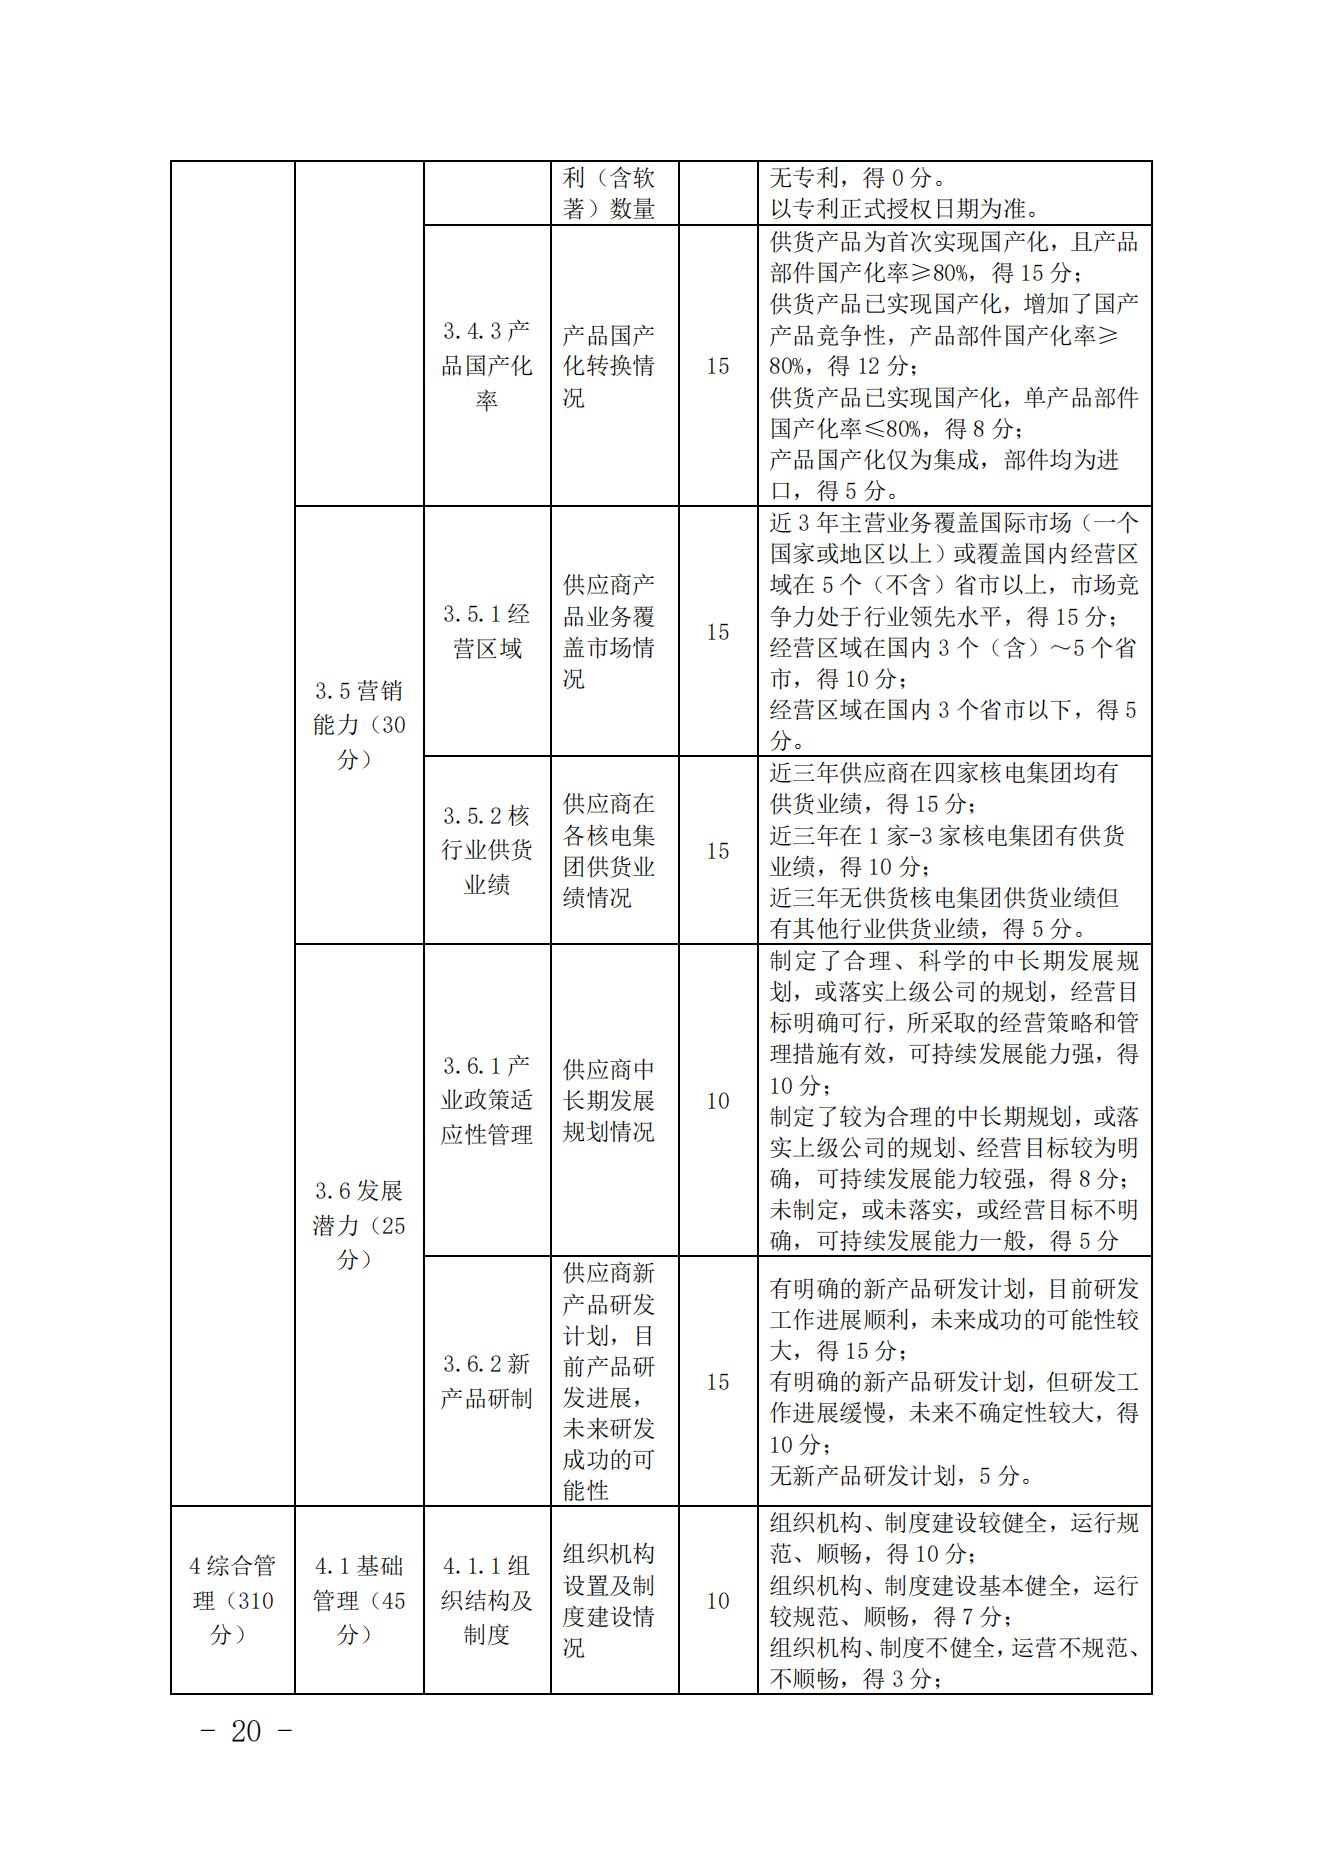 关于印发《中国核能行业协会核能行业供应商信用评价管理办法》《中国核能行业协会核能行业供应商信用评价规范》的通知_19.jpg